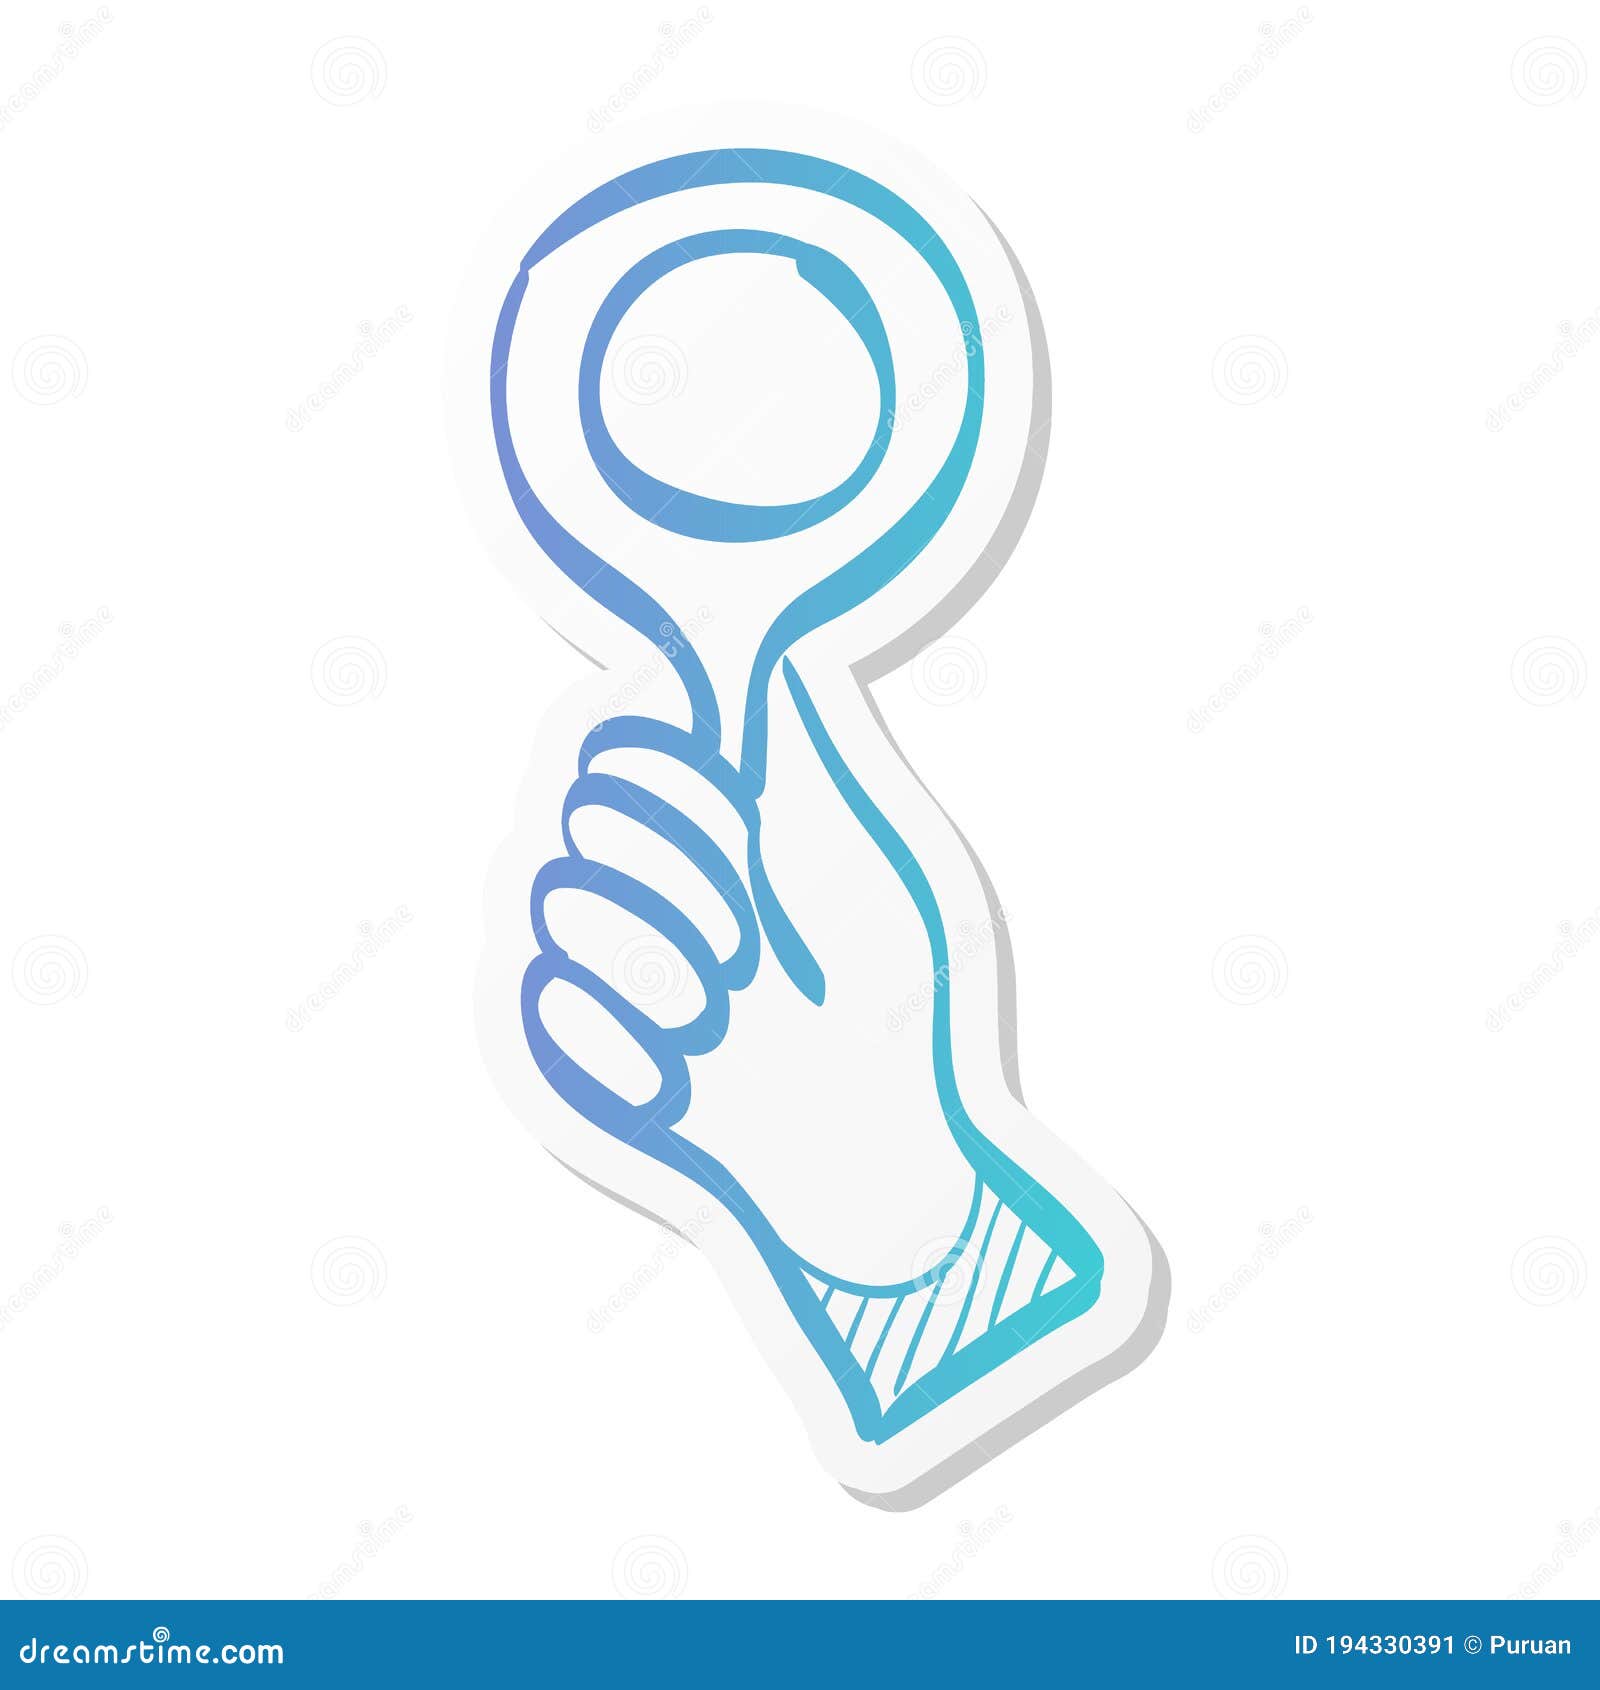 sticker style icon - bidder hand